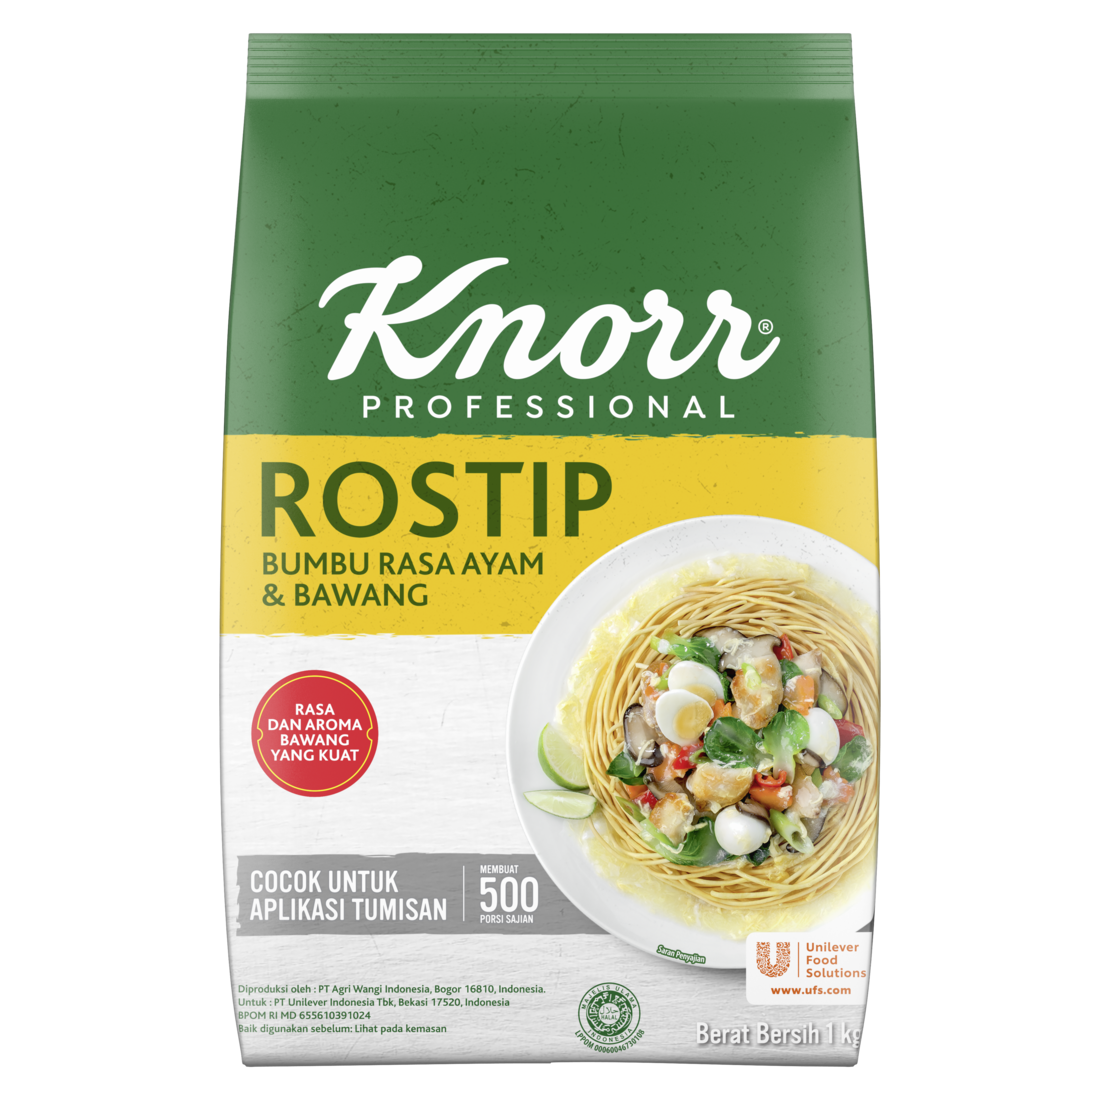 Knorr Rostip - Penyedap yang diperkaya bawang putih & lada asli untuk aroma rasa tumisan terbaik.